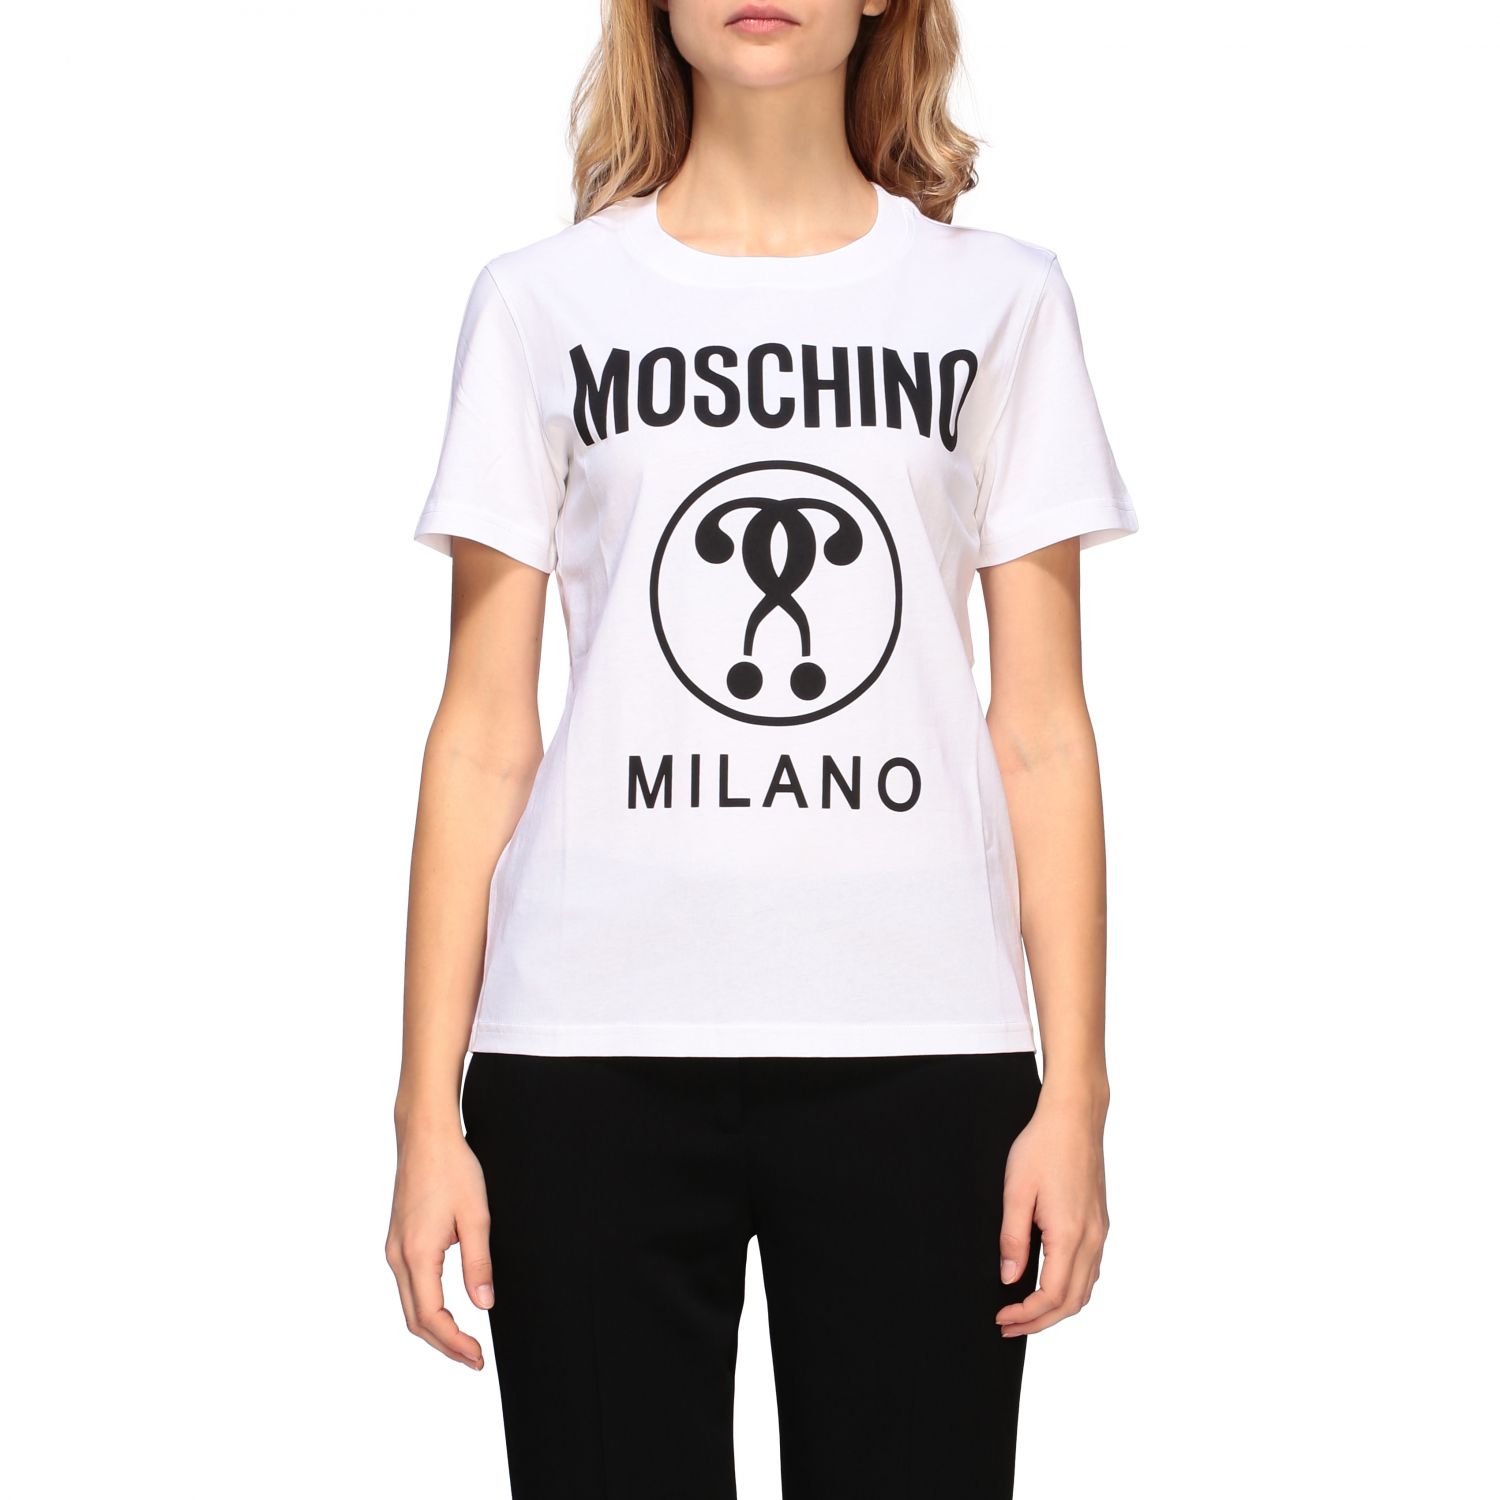 moschino milano t shirt price